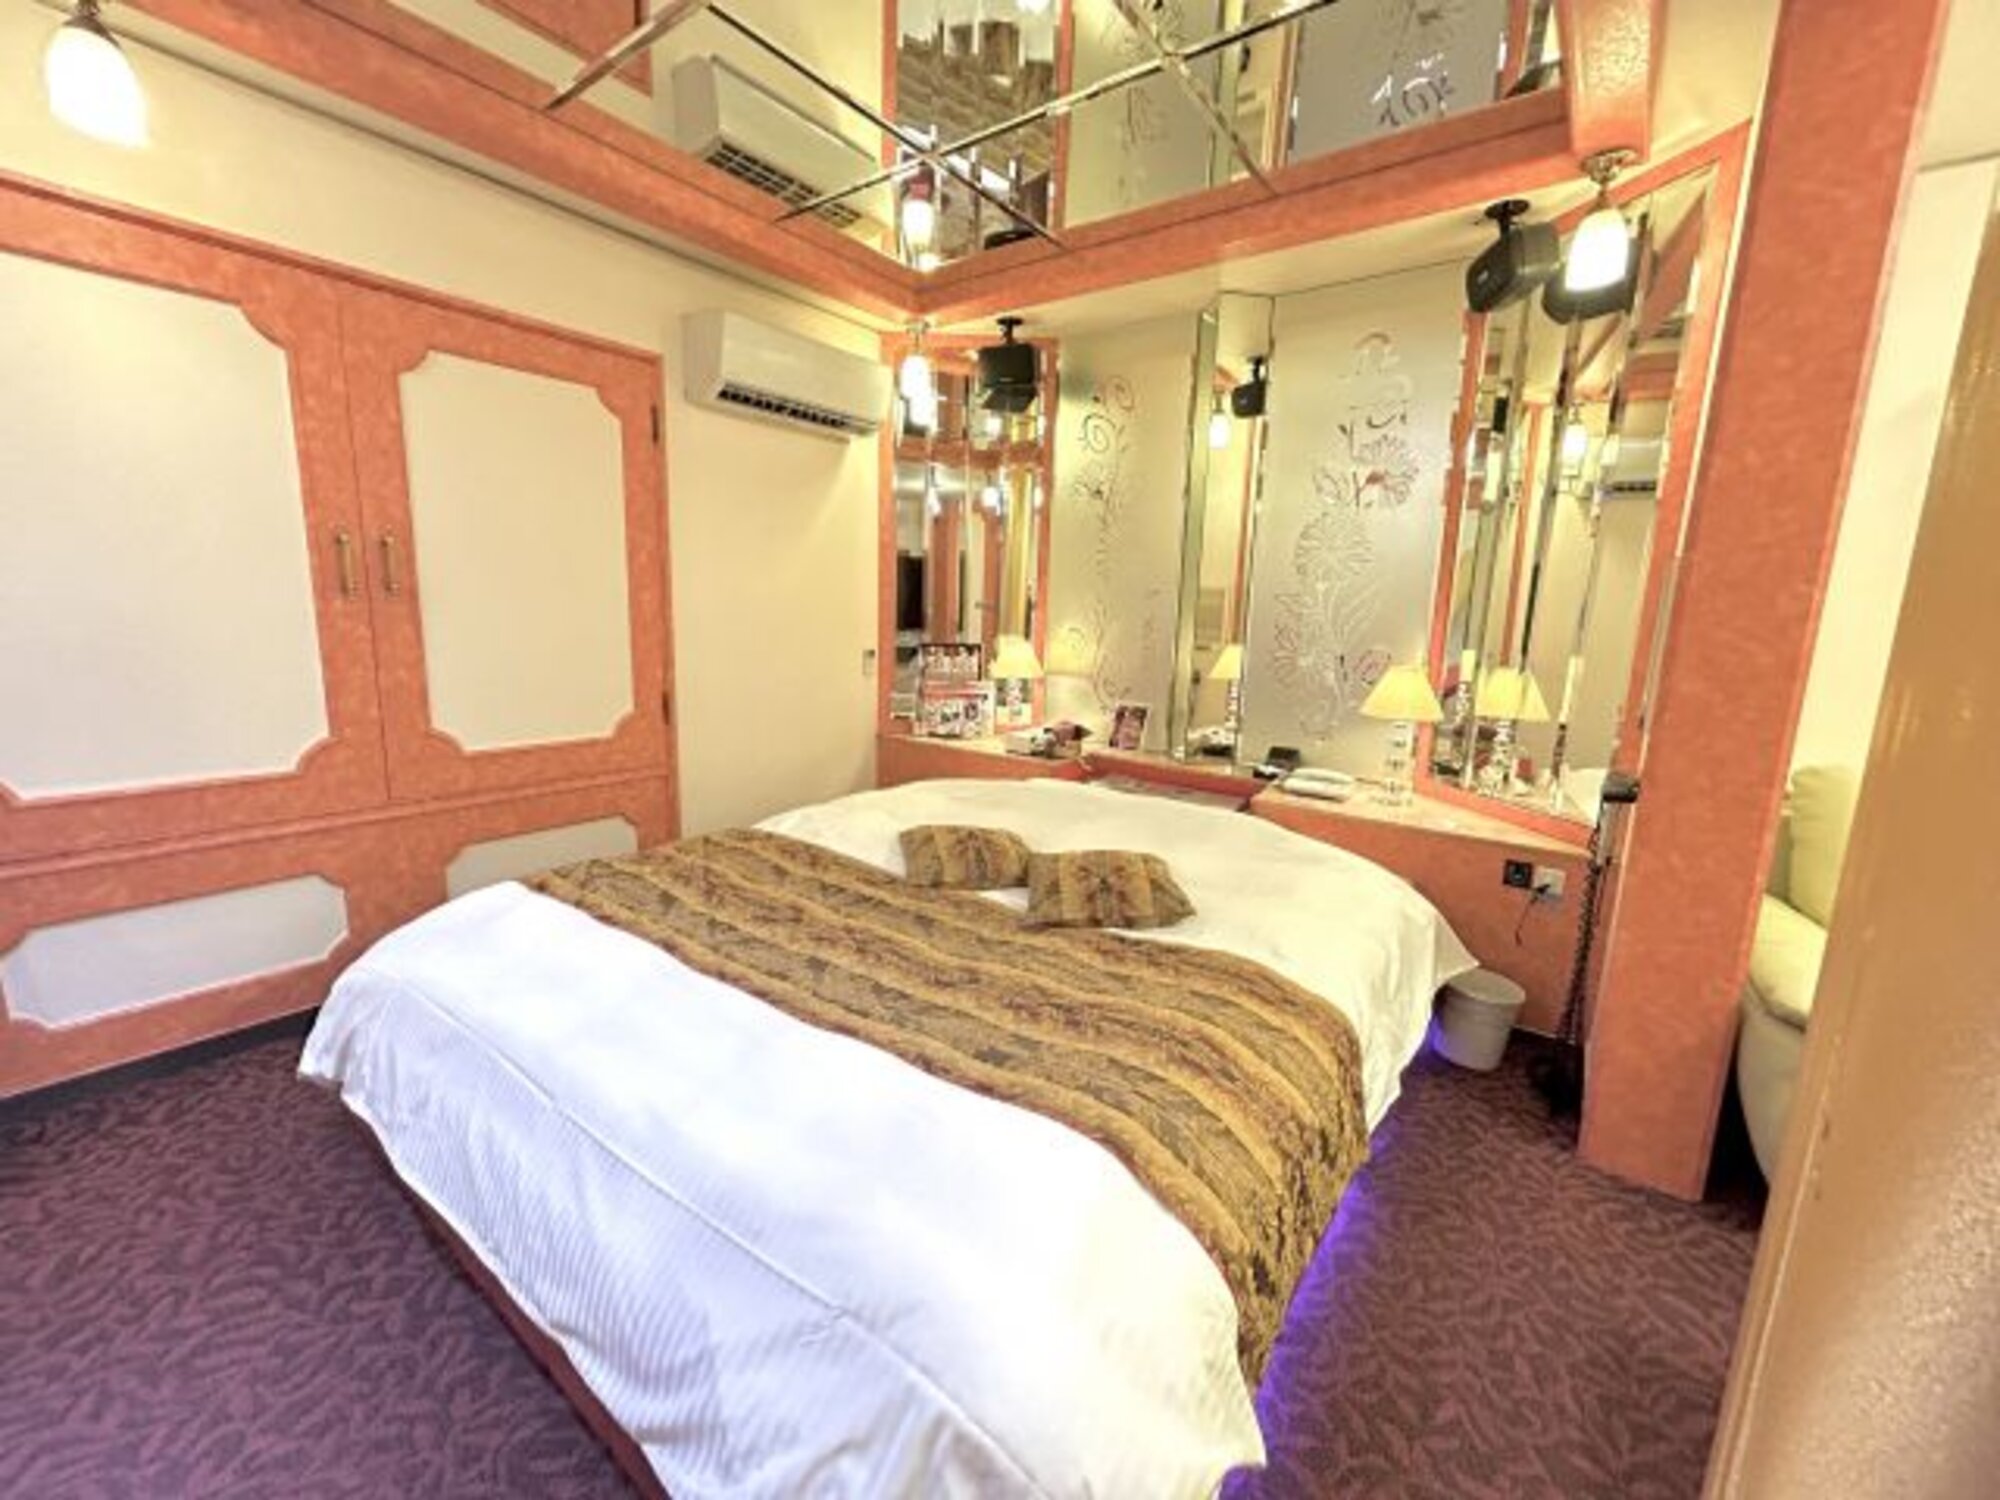 A szerelemhotel a rövid távú tartózkodásra alkalmas hotelek egy típusa, amely világszerte megtalálható, és elsősorban azzal a céllal működik, hogy a vendégek számára a szexhez szükséges egyedüllétet biztosítsa.
